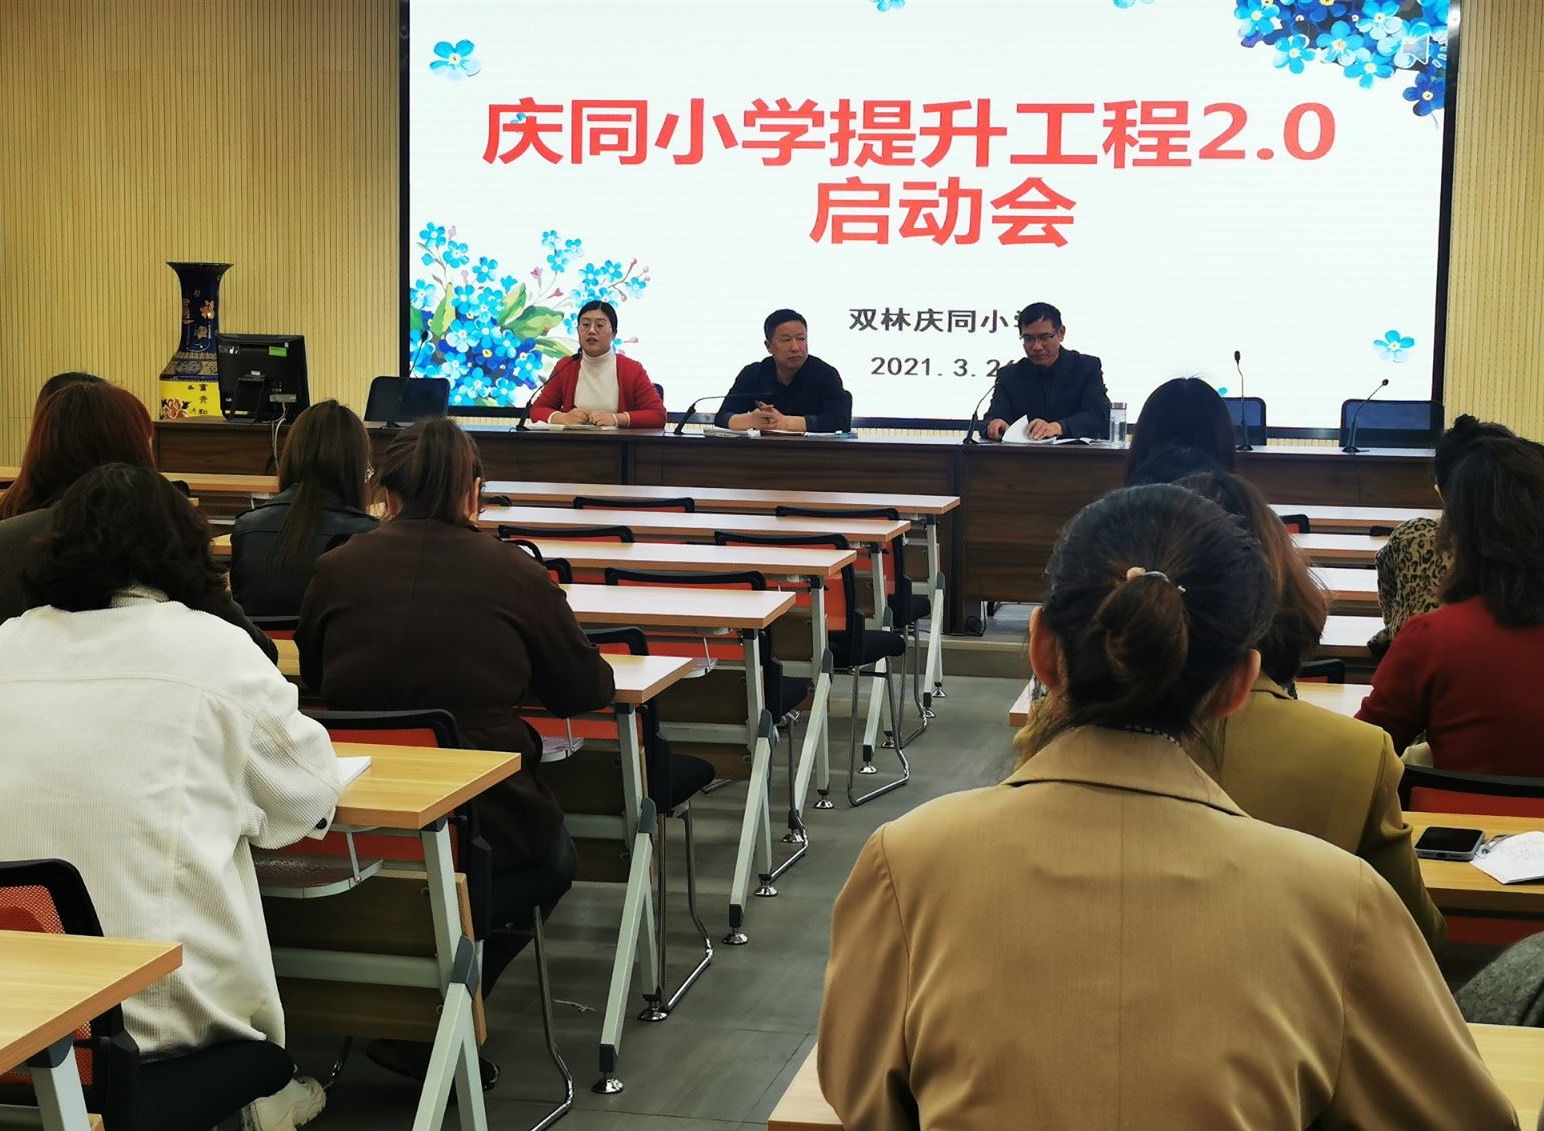 双林庆同小学举行提升工程2.0启动仪式